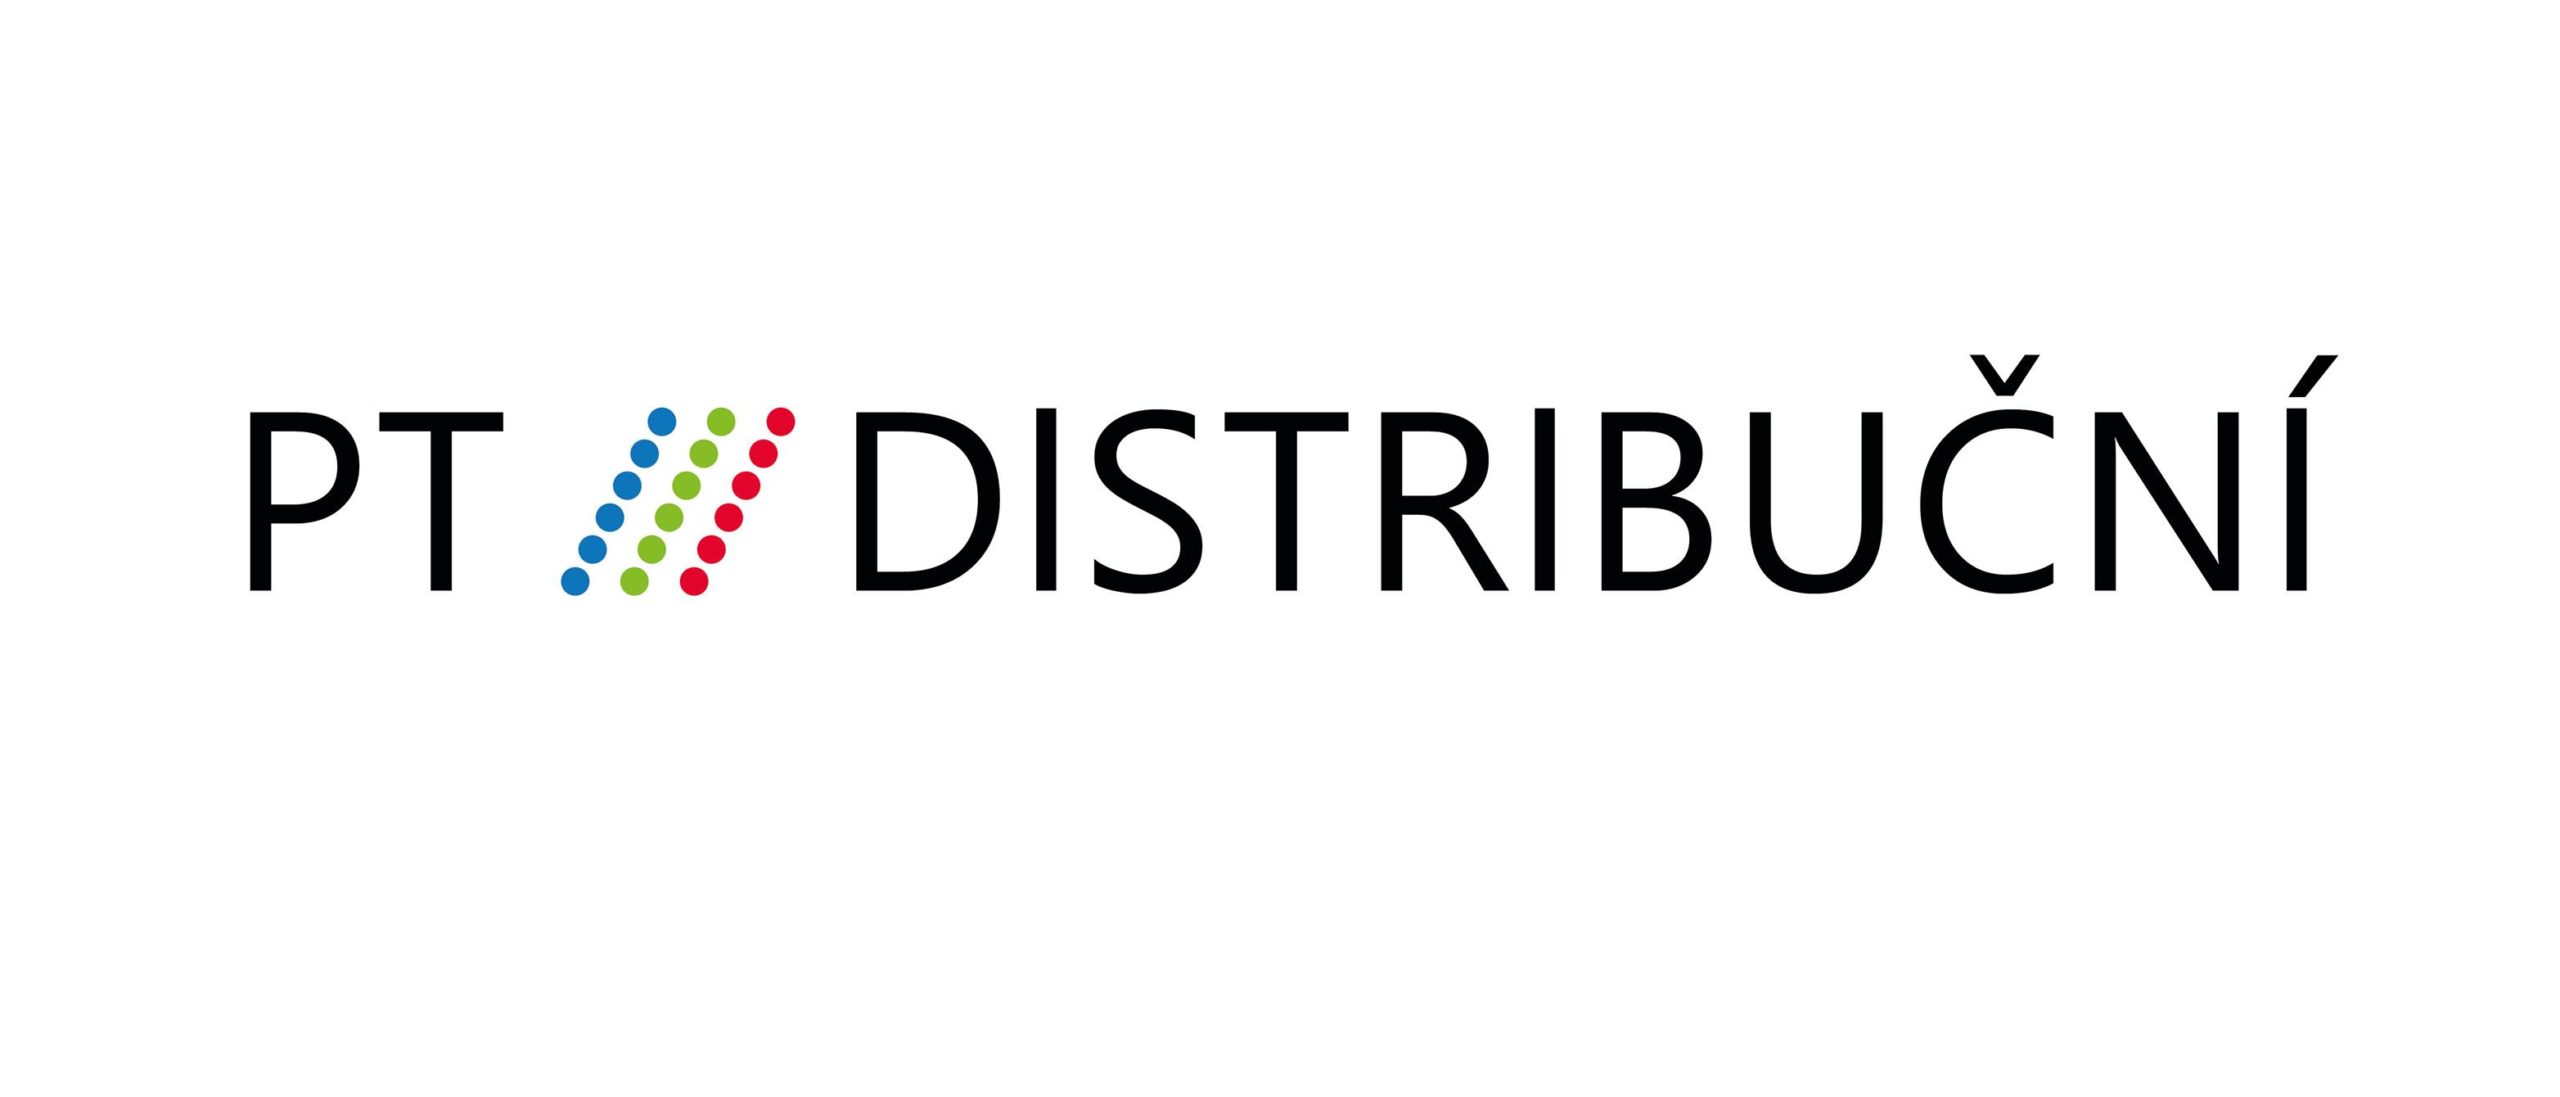 PT Distribuční logo